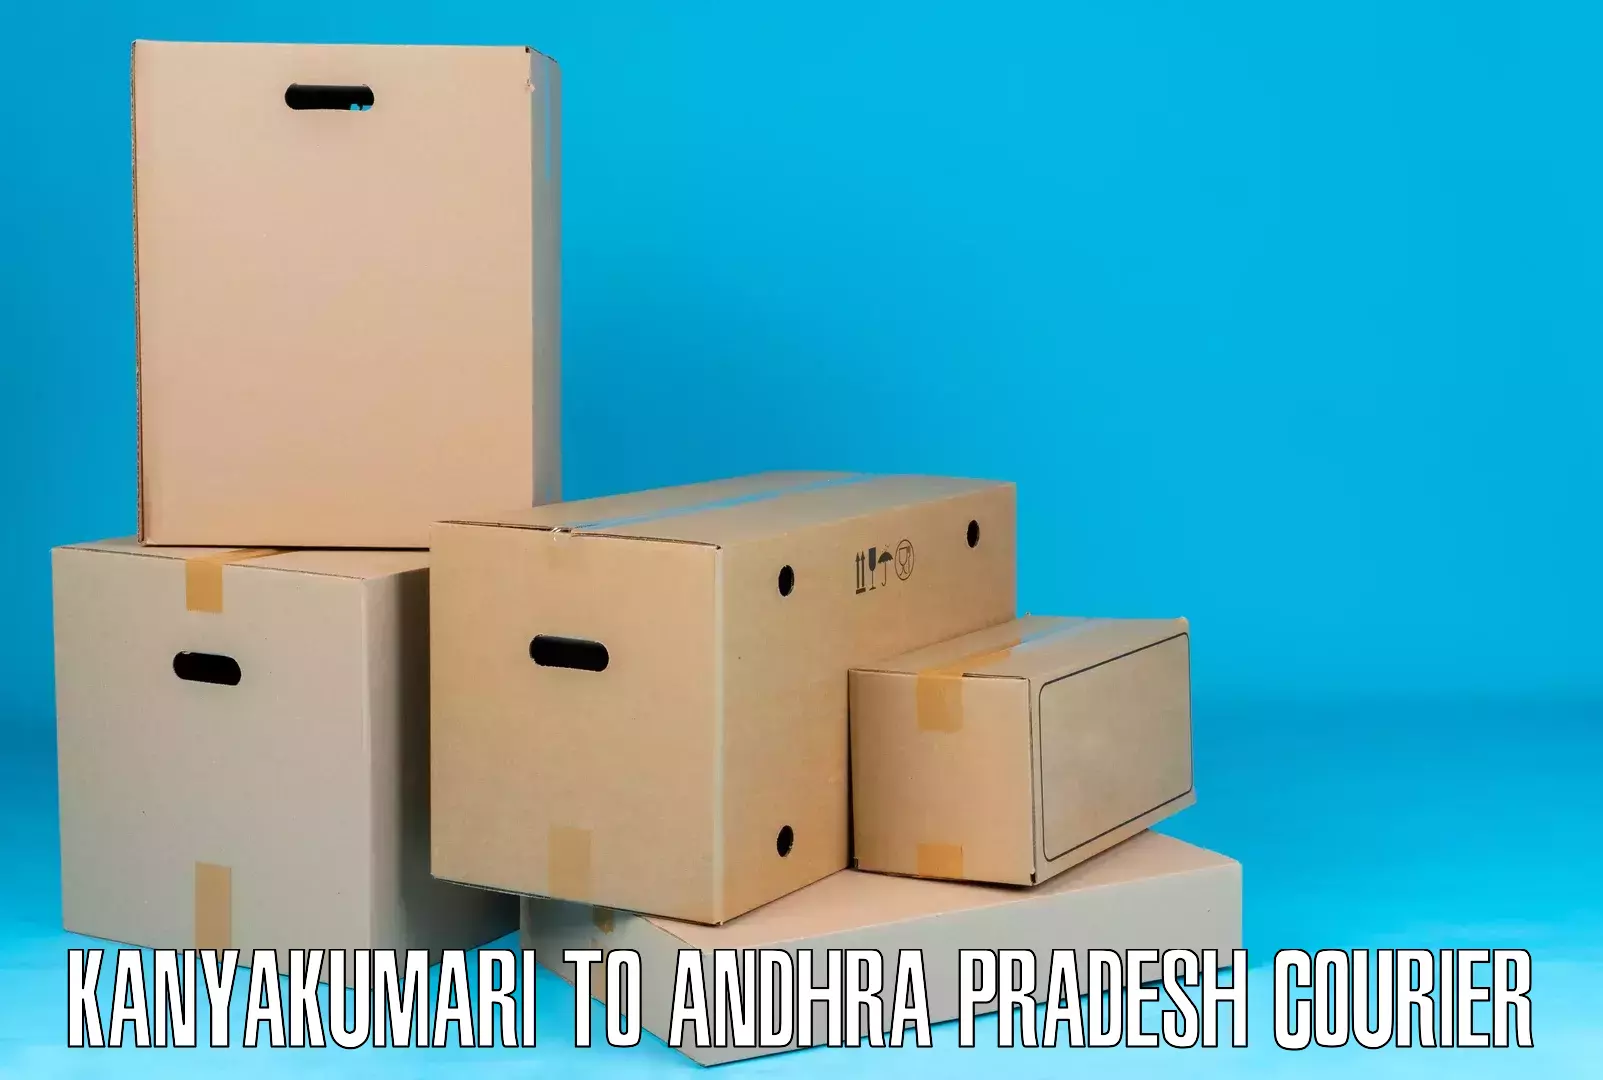 Efficient courier operations Kanyakumari to Achampet Palnadu